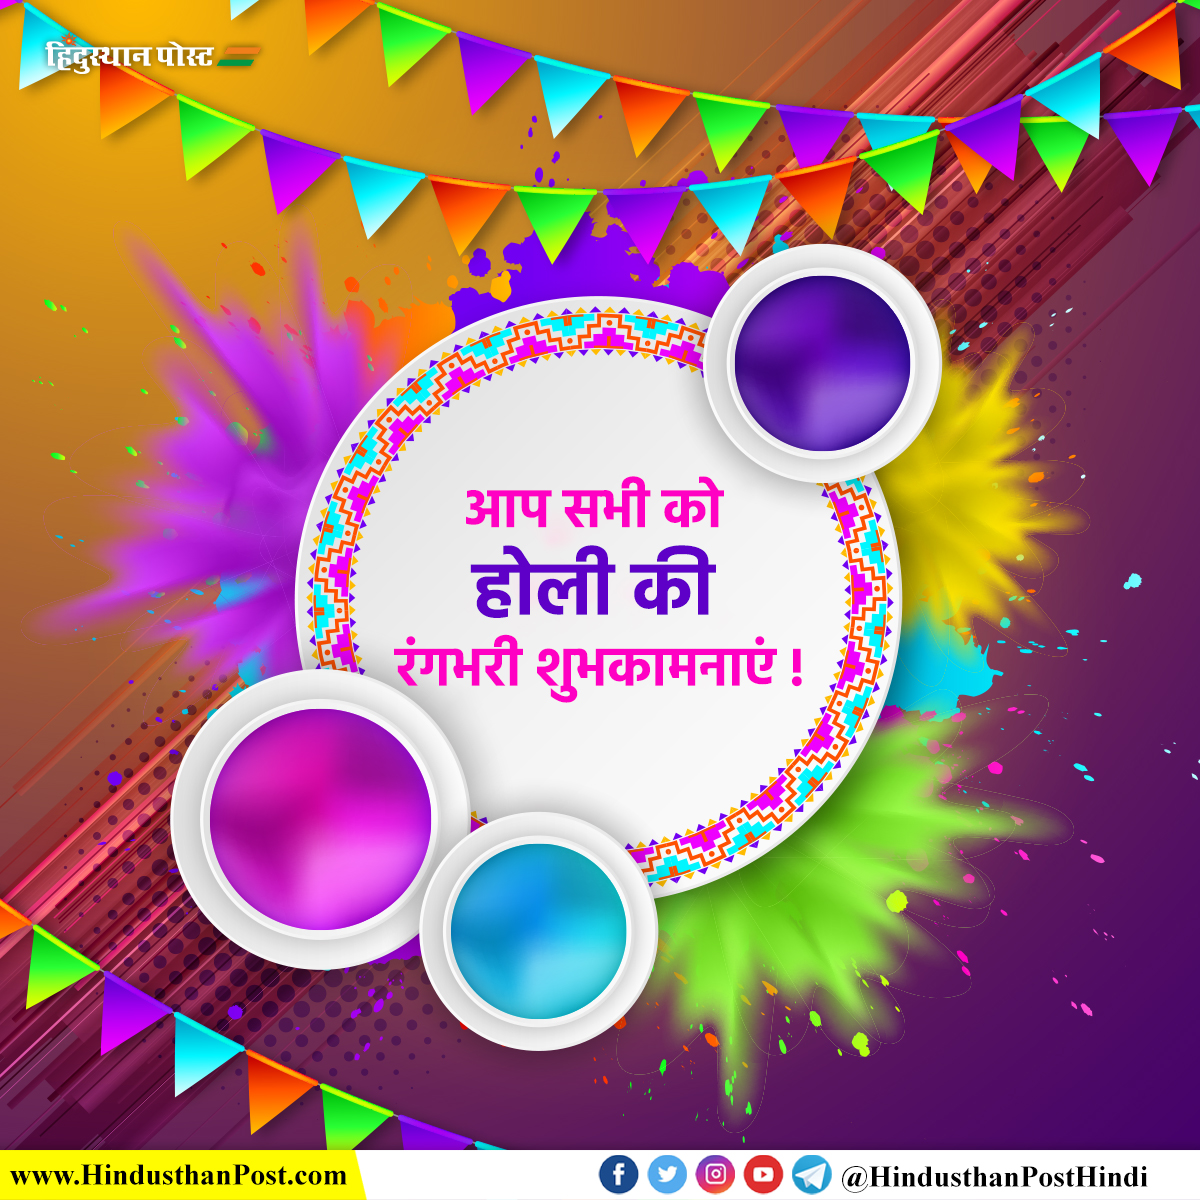 आप सभी को होली की रंगभरी शुभकामनाएं !
#holi #dhulivandan #rangpanchmi #colours #festivalofcolours #festival #hindusthanpost #hindusthanpostmarathi